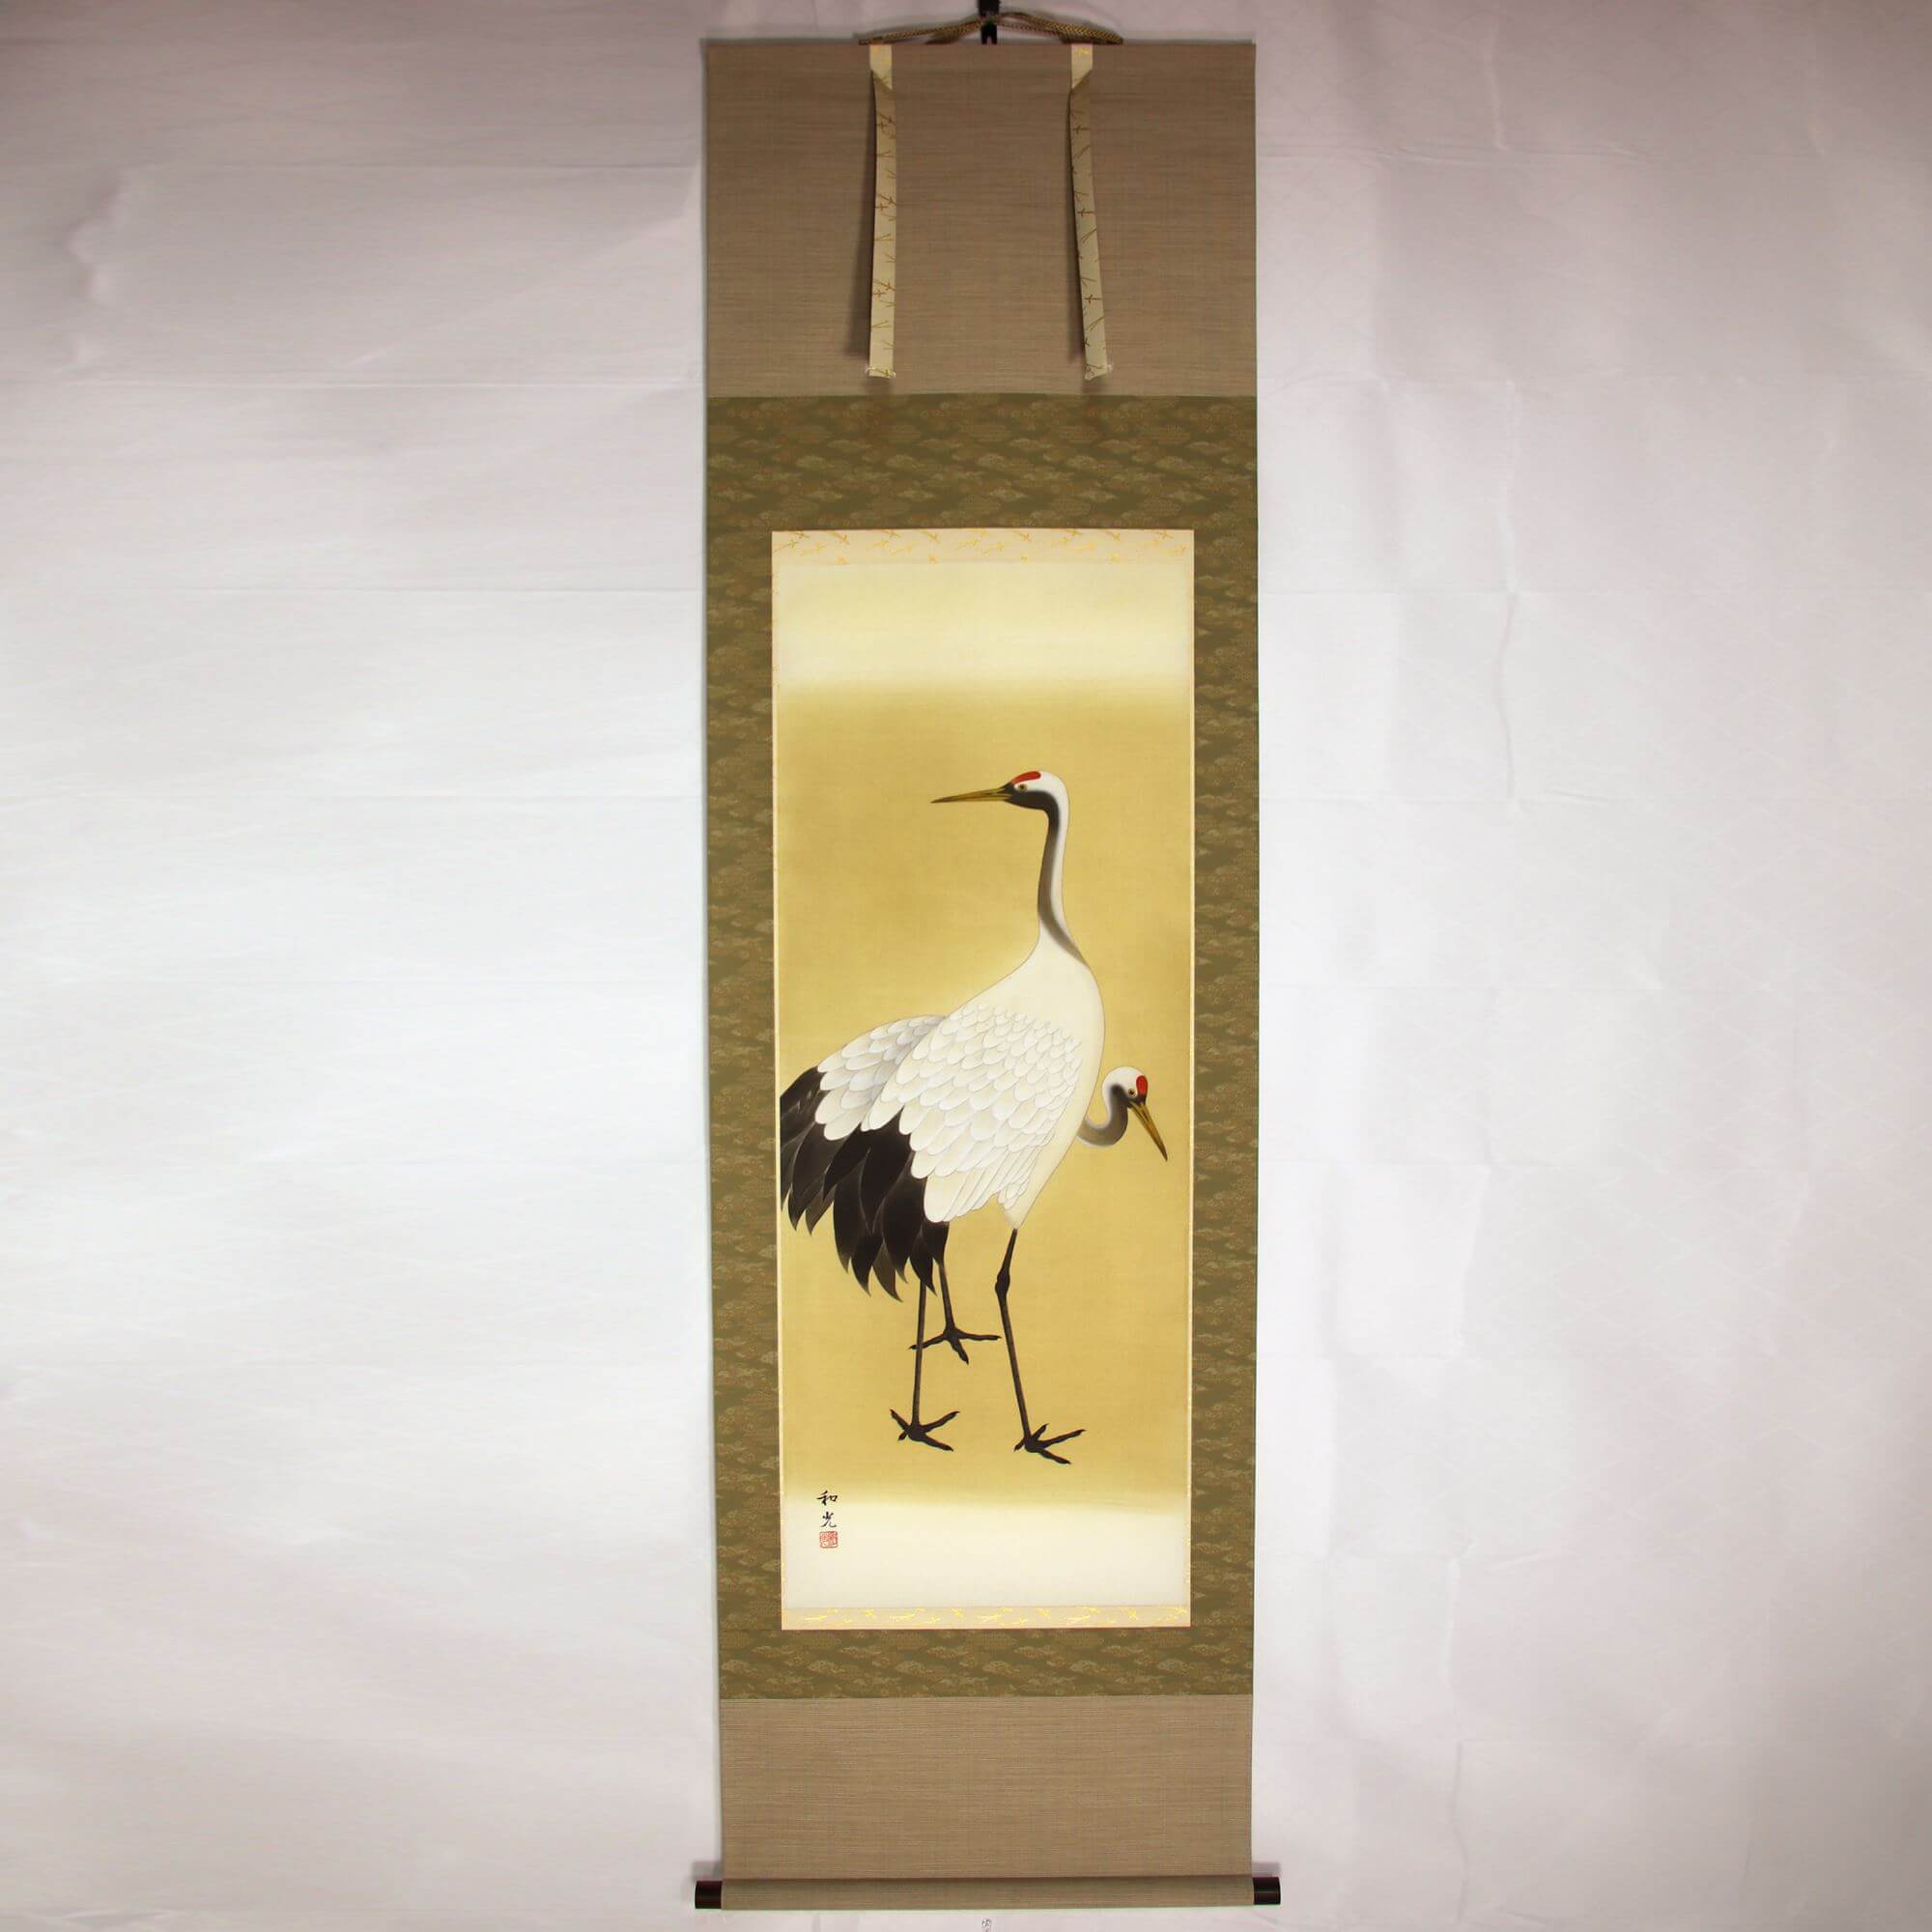 A Pair of Cranes / Wakou Miyake